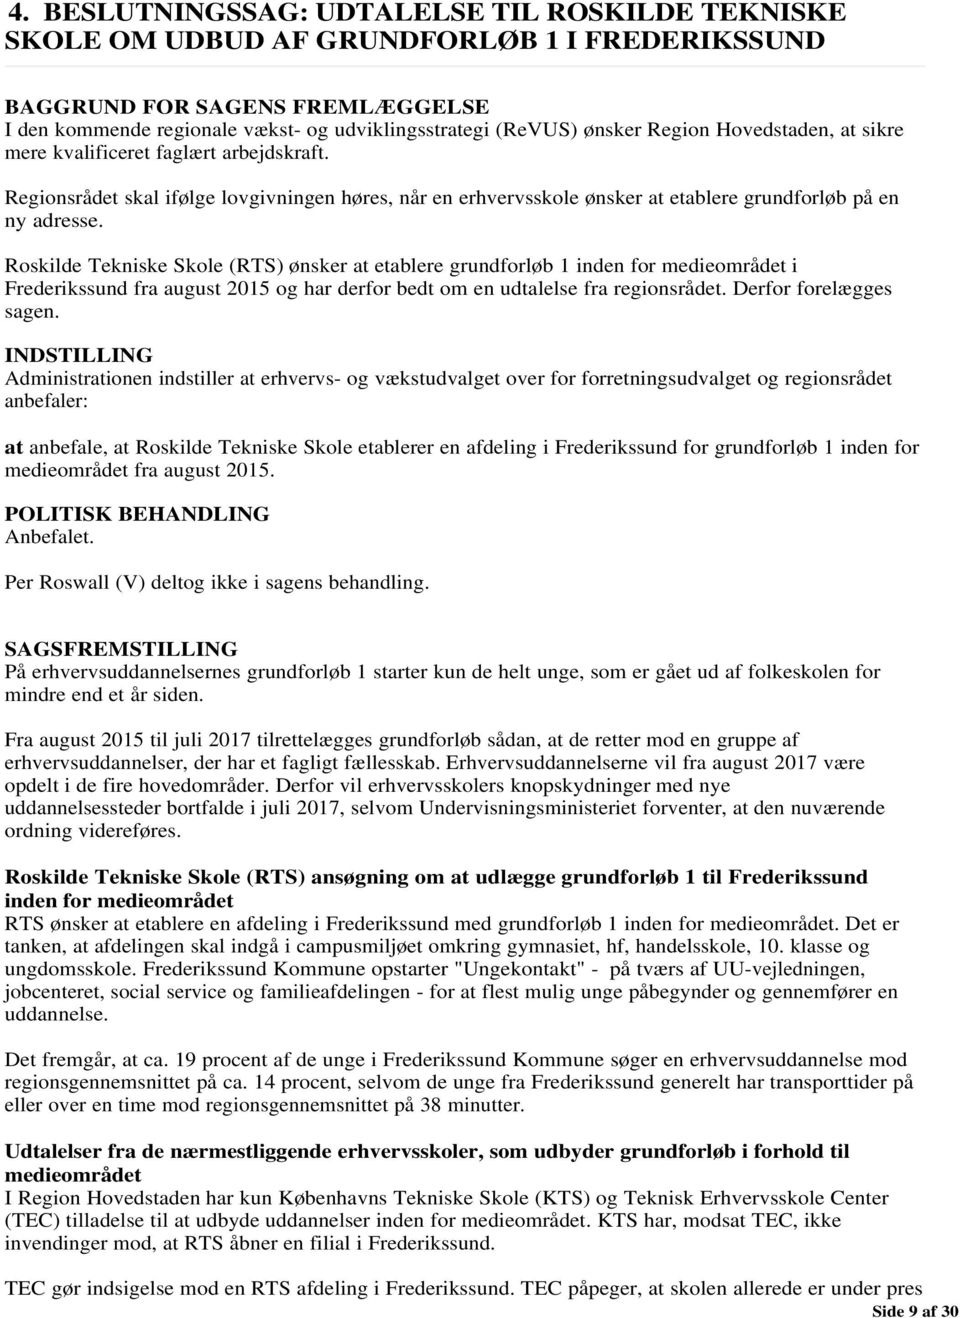 Roskilde Tekniske Skole (RTS) ønsker at etablere grundforløb 1 inden for medieområdet i Frederikssund fra august 2015 og har derfor bedt om en udtalelse fra regionsrådet. Derfor forelægges sagen.